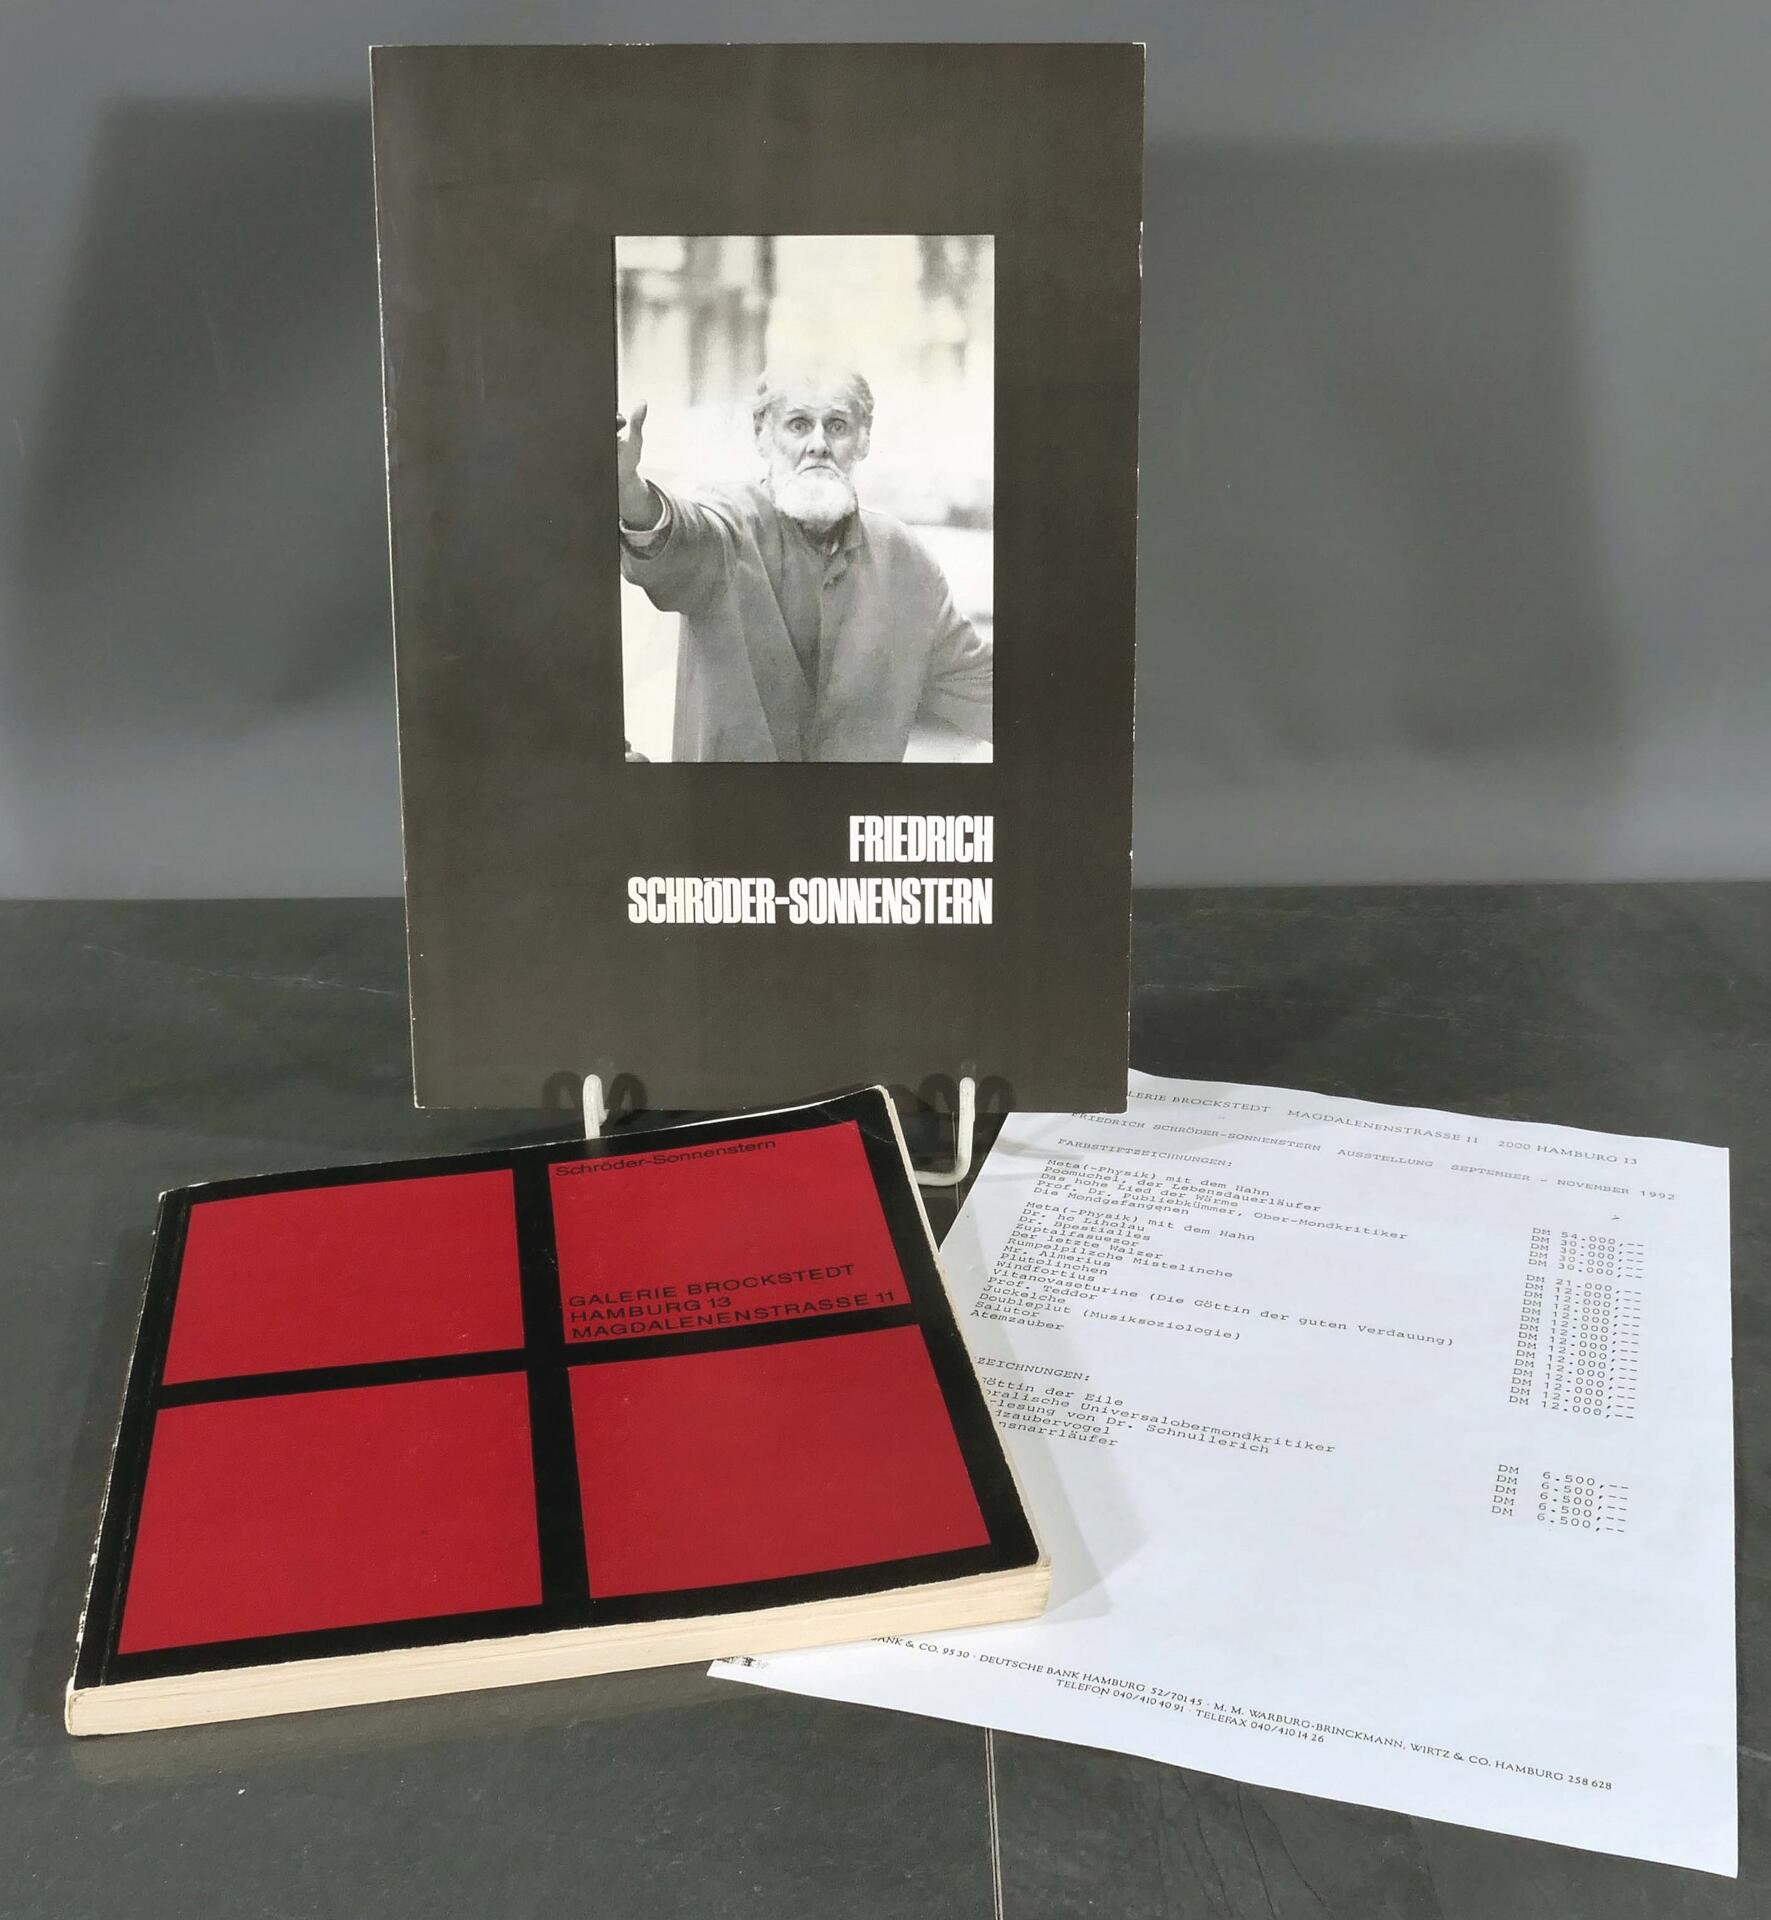 3 tlg. Konvolut "Friedrich Schröder-Sonnenstern", bestehend aus Katalog von 1973 und Preisliste 199 - Image 6 of 6